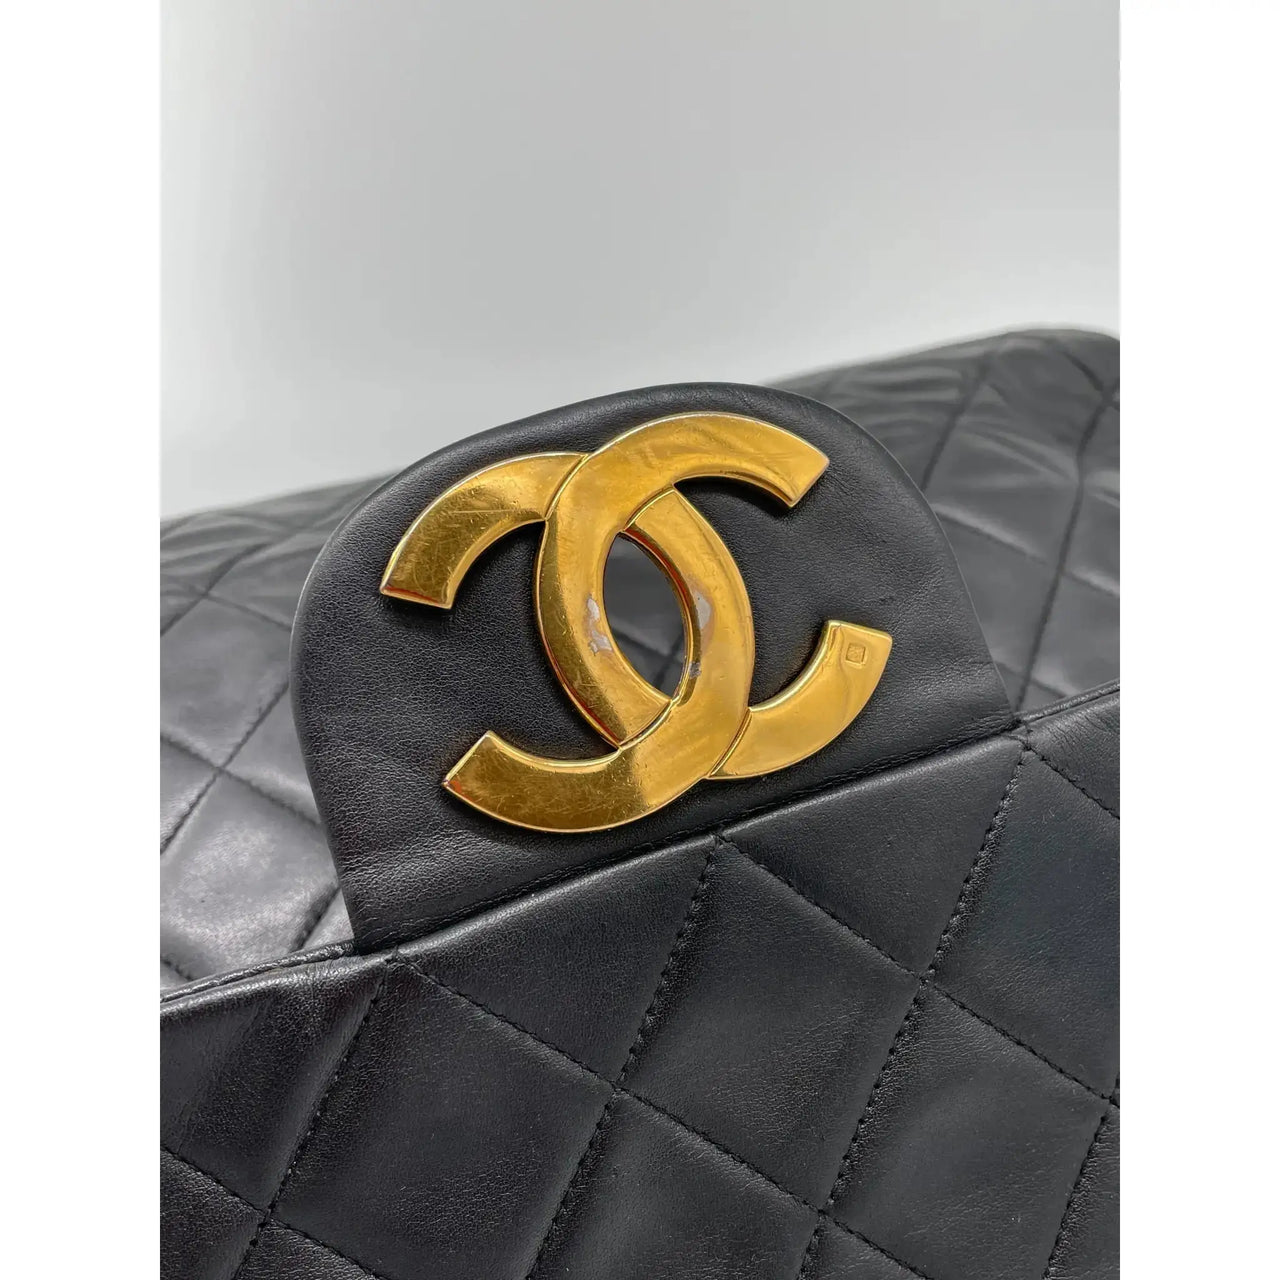 chanel gold bag vintage leather